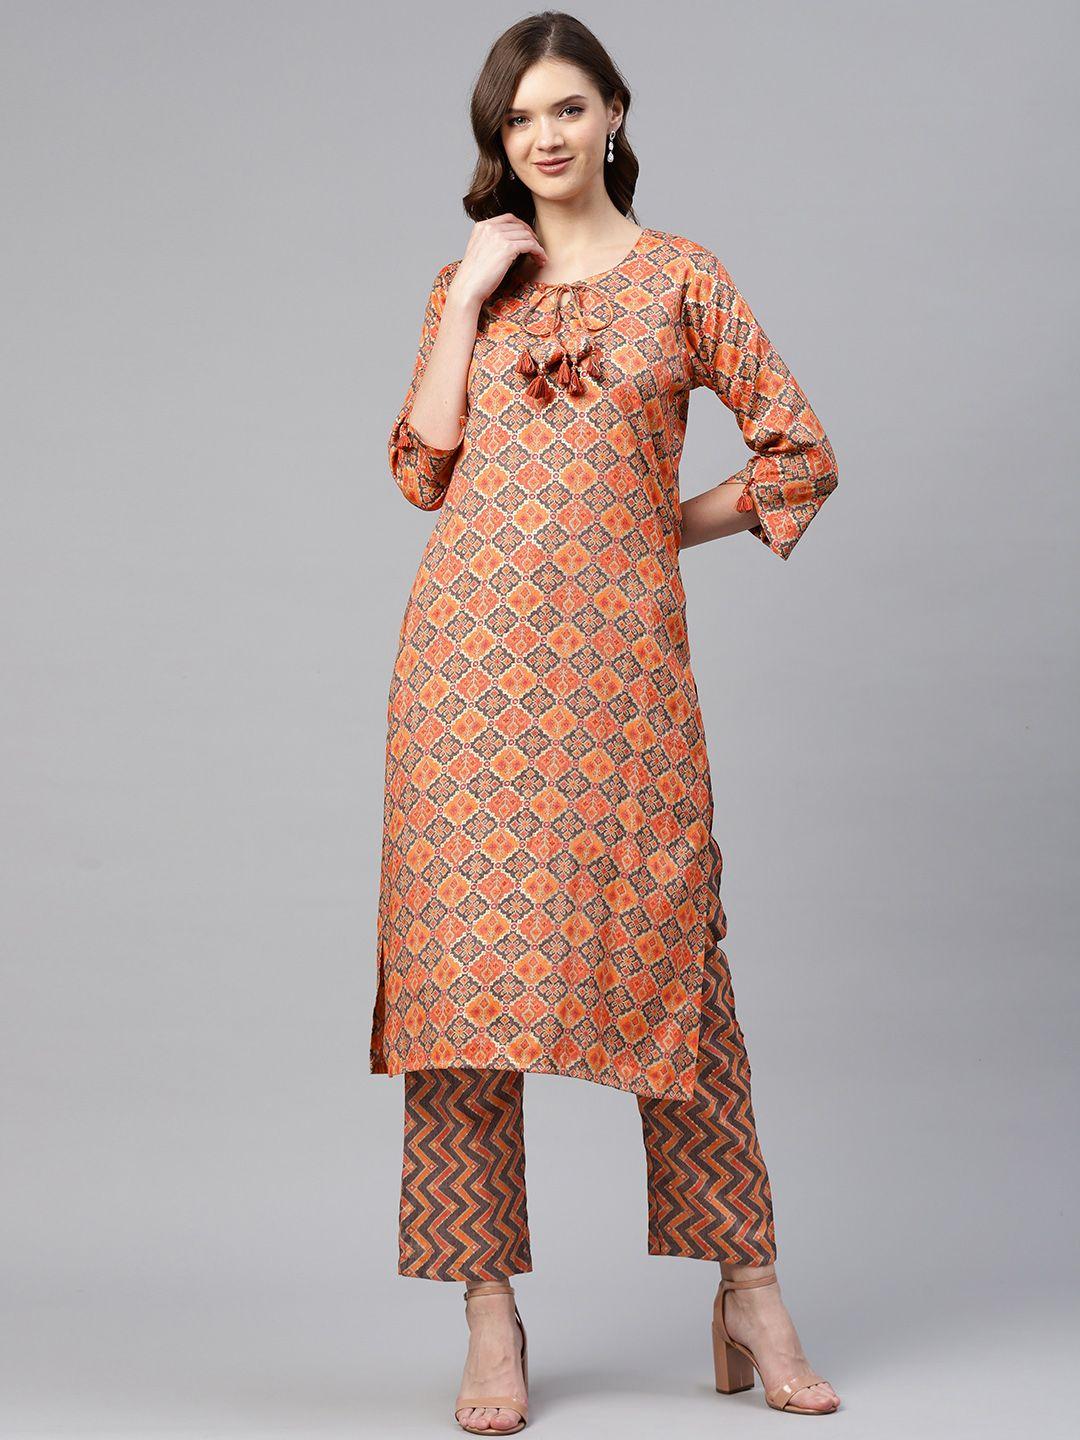 Readiprint Fashions Women Orange & Gold Ikat Woven Design Straight Kurta with Palazzos